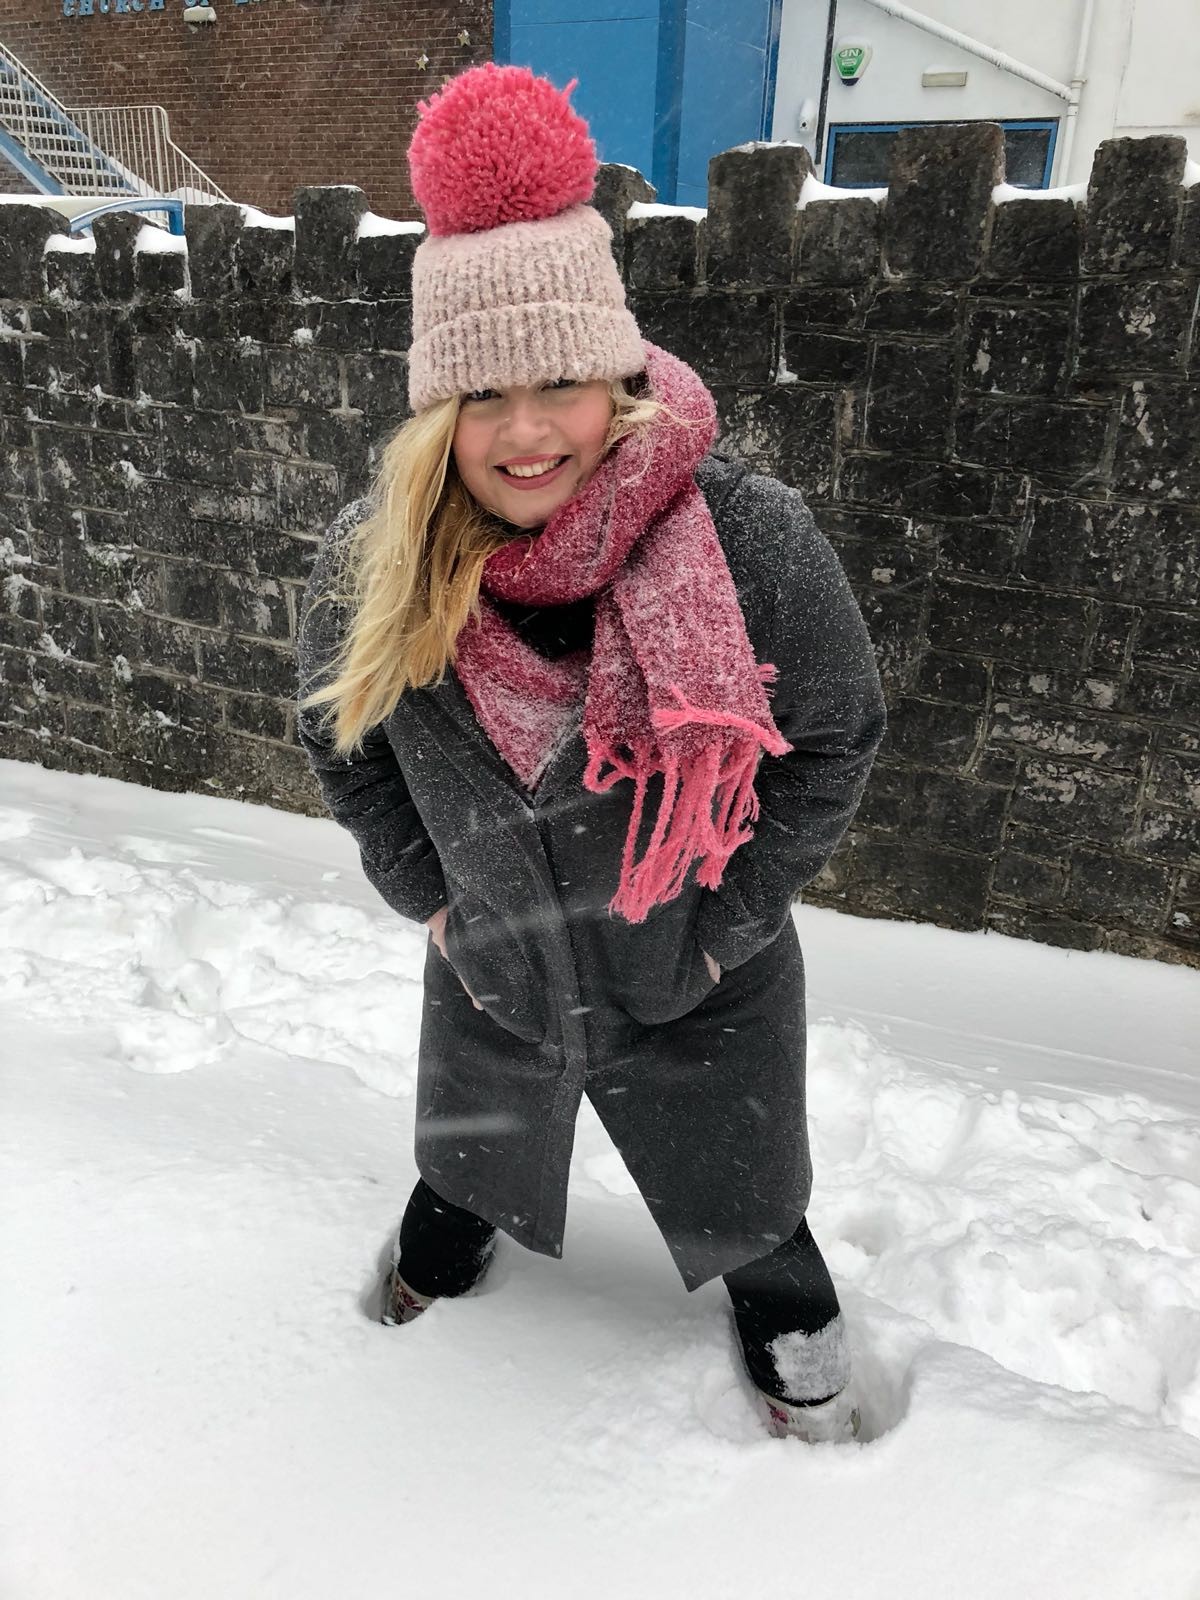 Tara Povey in the snow in Devon